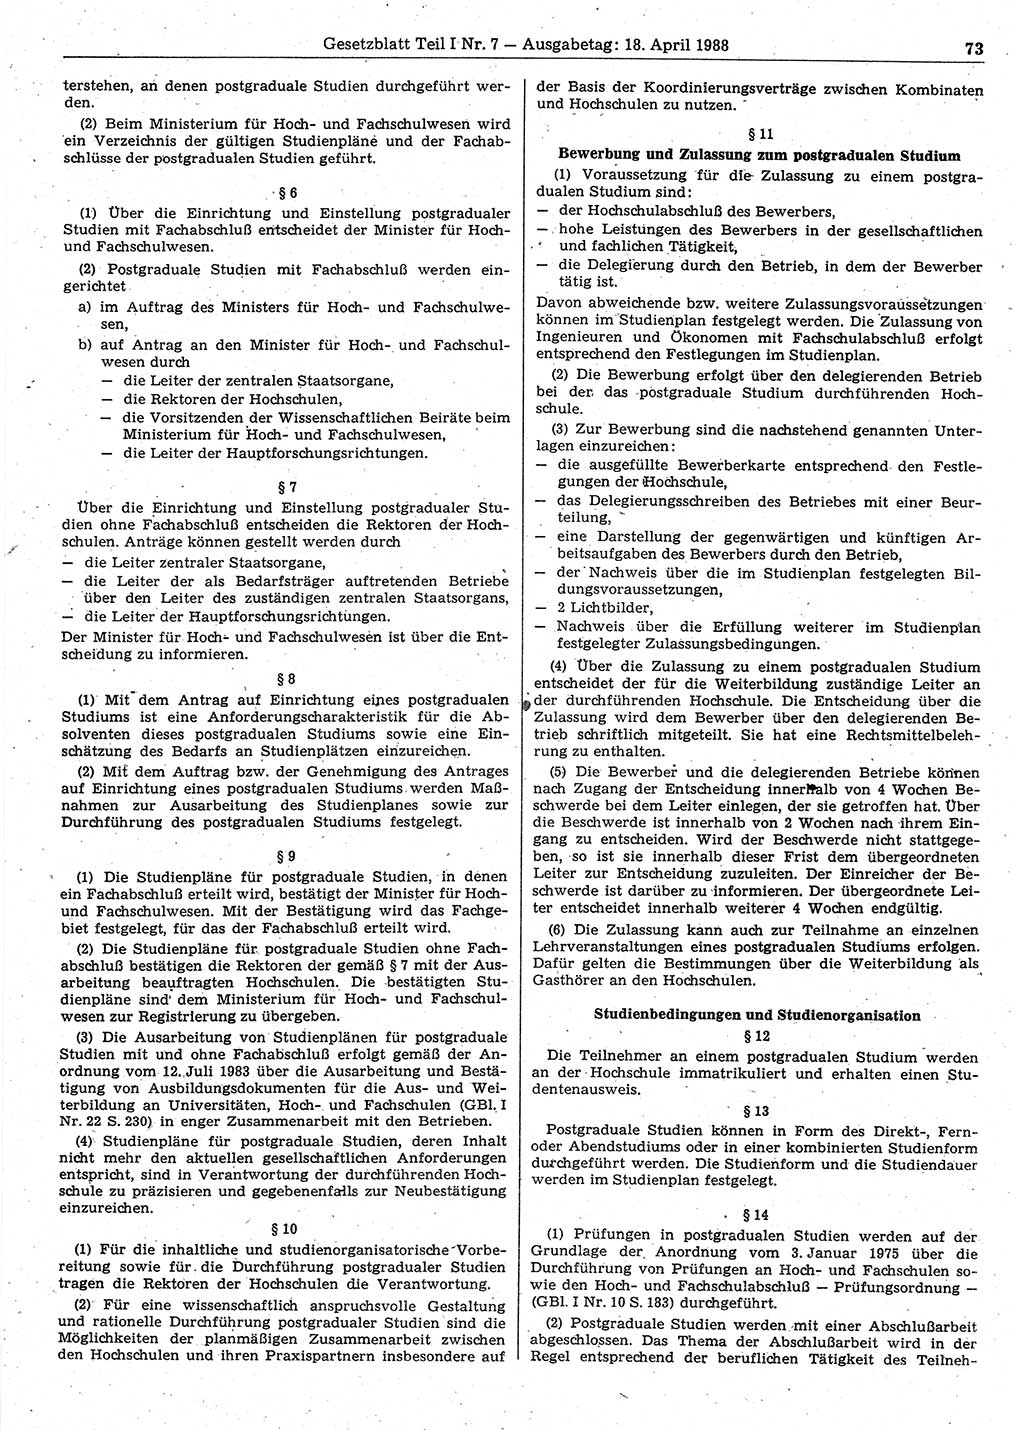 Gesetzblatt (GBl.) der Deutschen Demokratischen Republik (DDR) Teil Ⅰ 1988, Seite 73 (GBl. DDR Ⅰ 1988, S. 73)